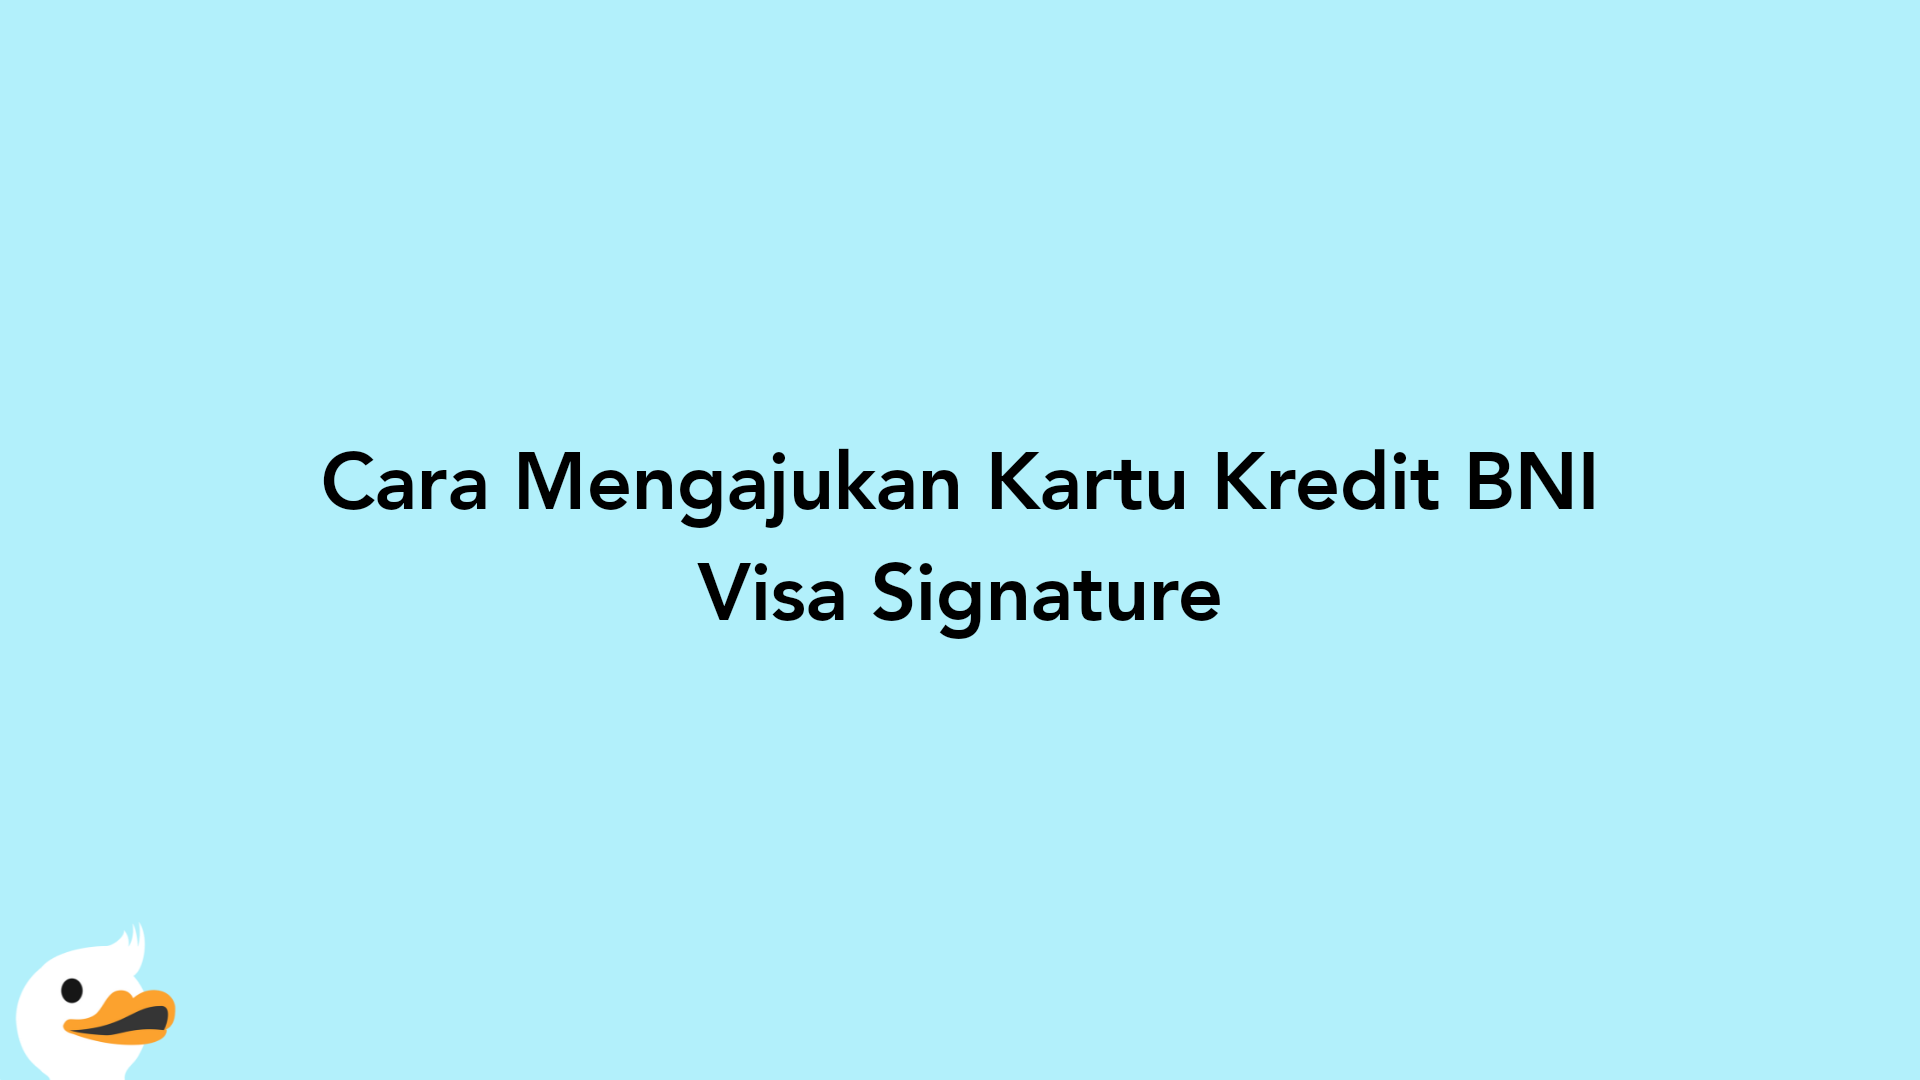 Cara Mengajukan Kartu Kredit BNI Visa Signature